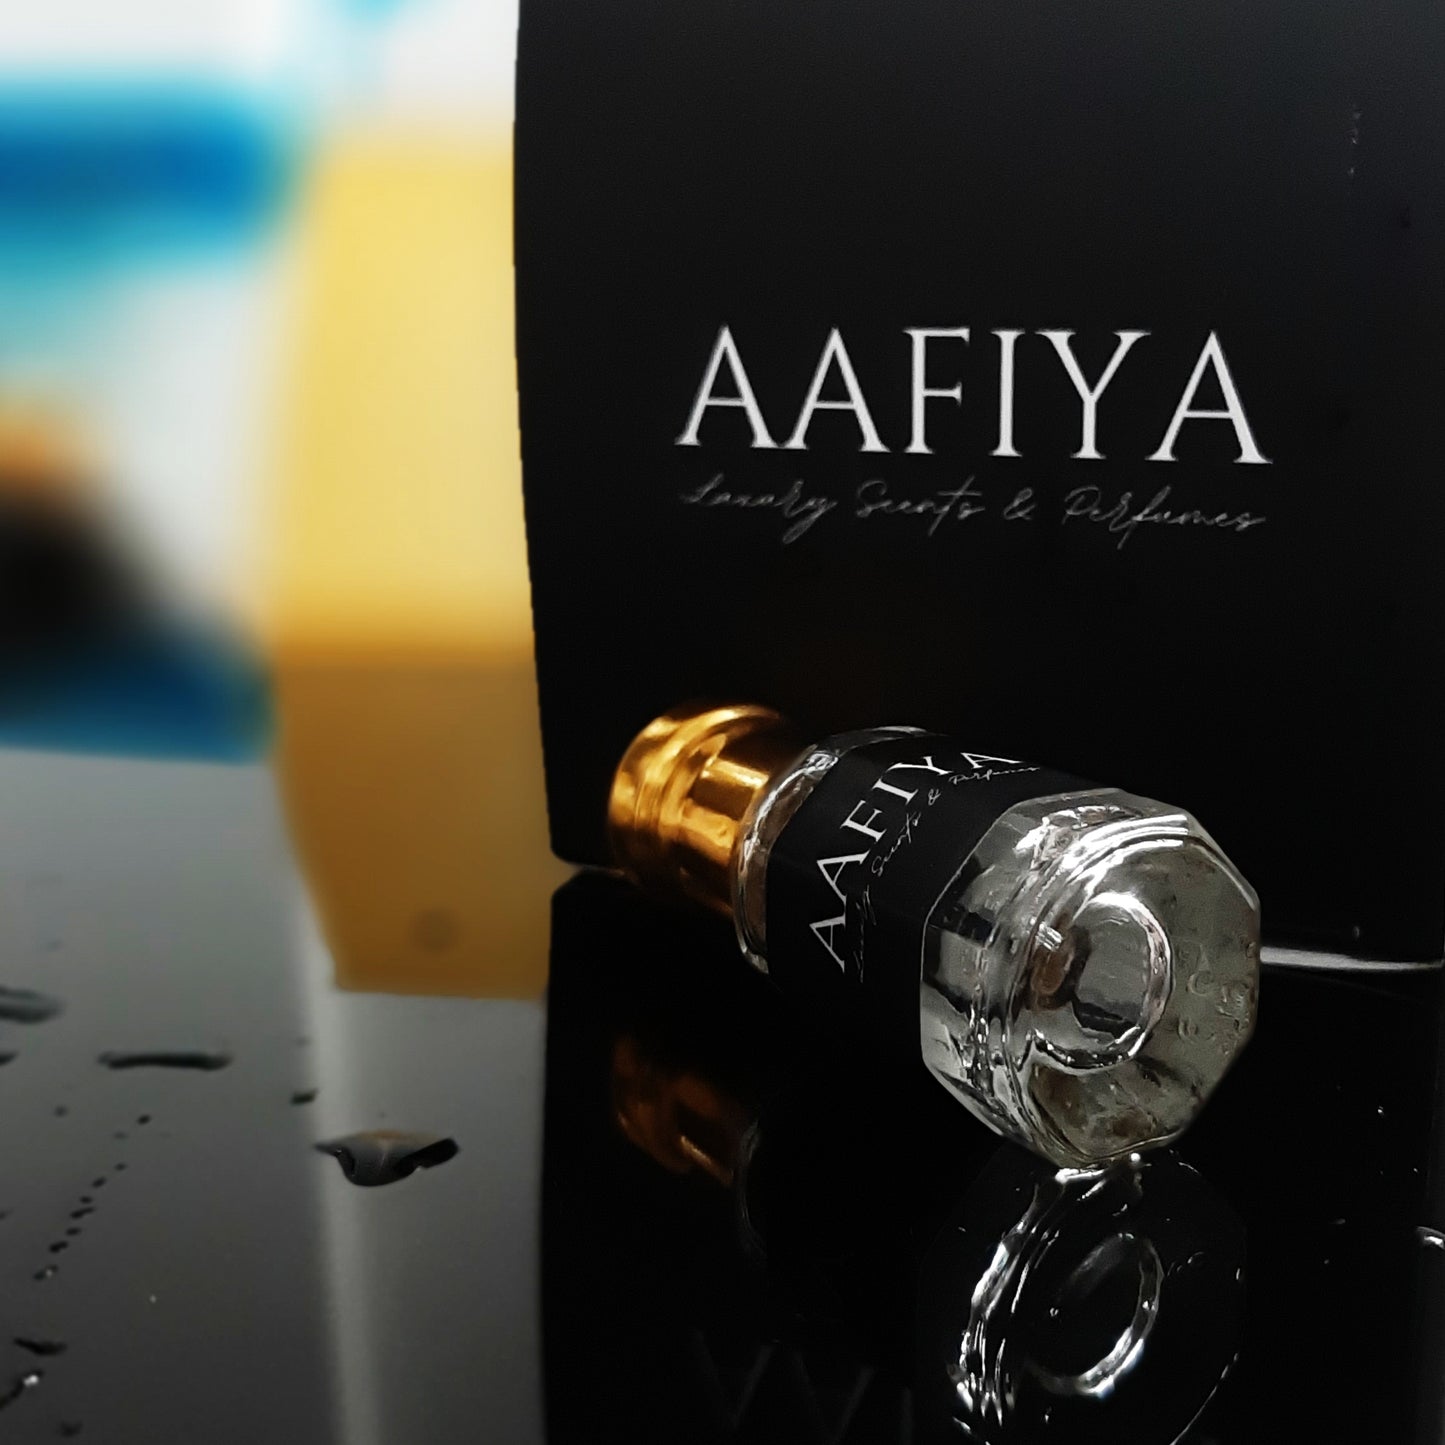 Not A Parfum - Aafiya Luxury Scents & Perfumes